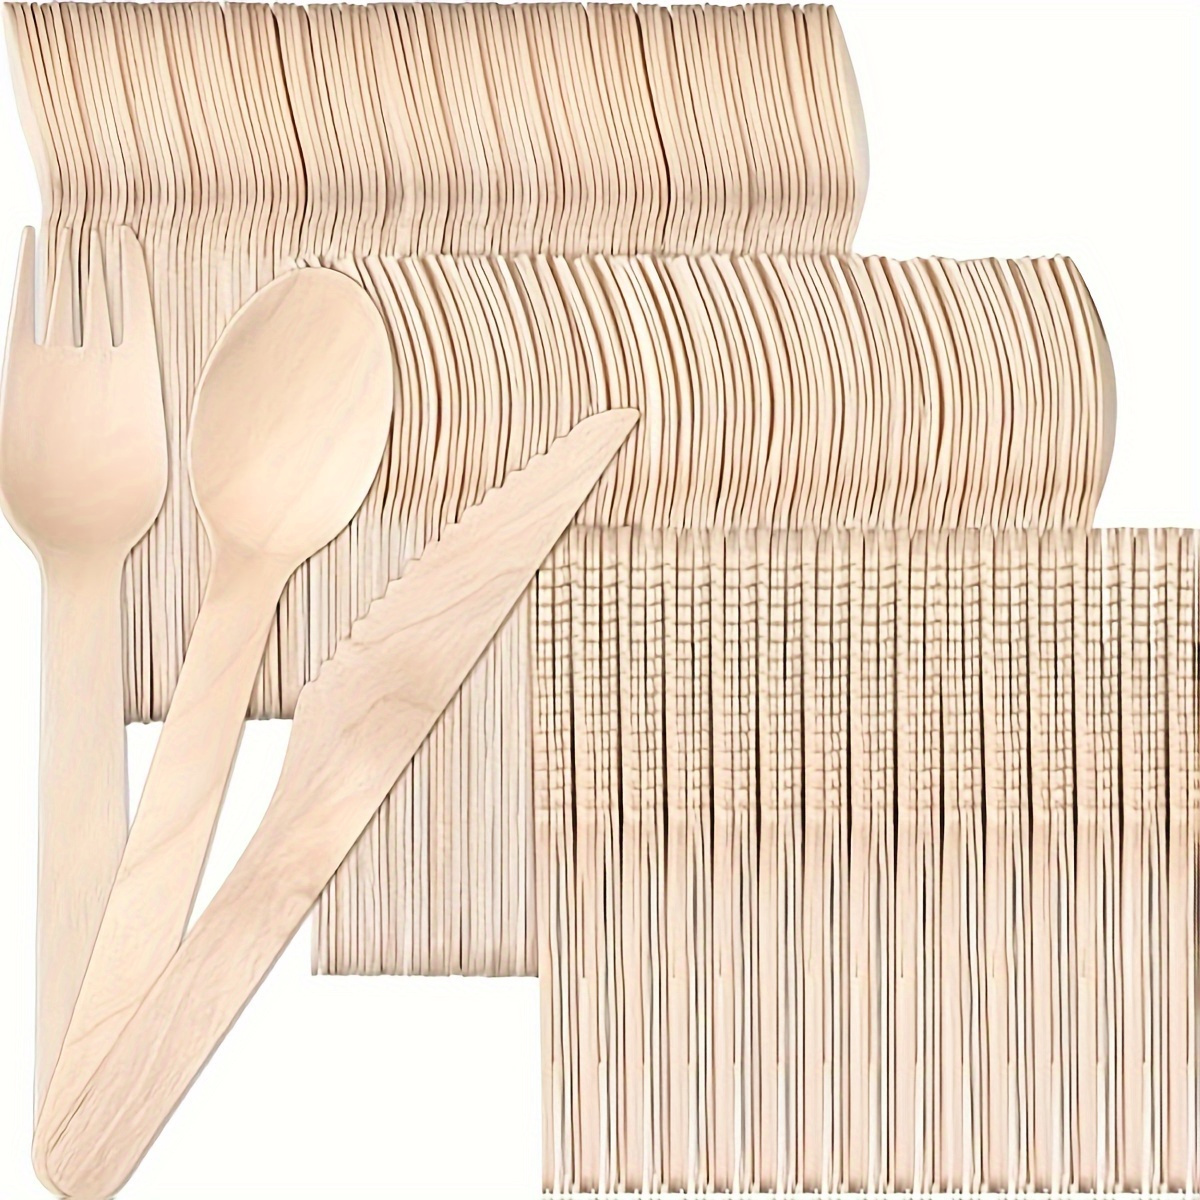 100 x 3 Couverts bois fourchettes, cuillères et couteaux